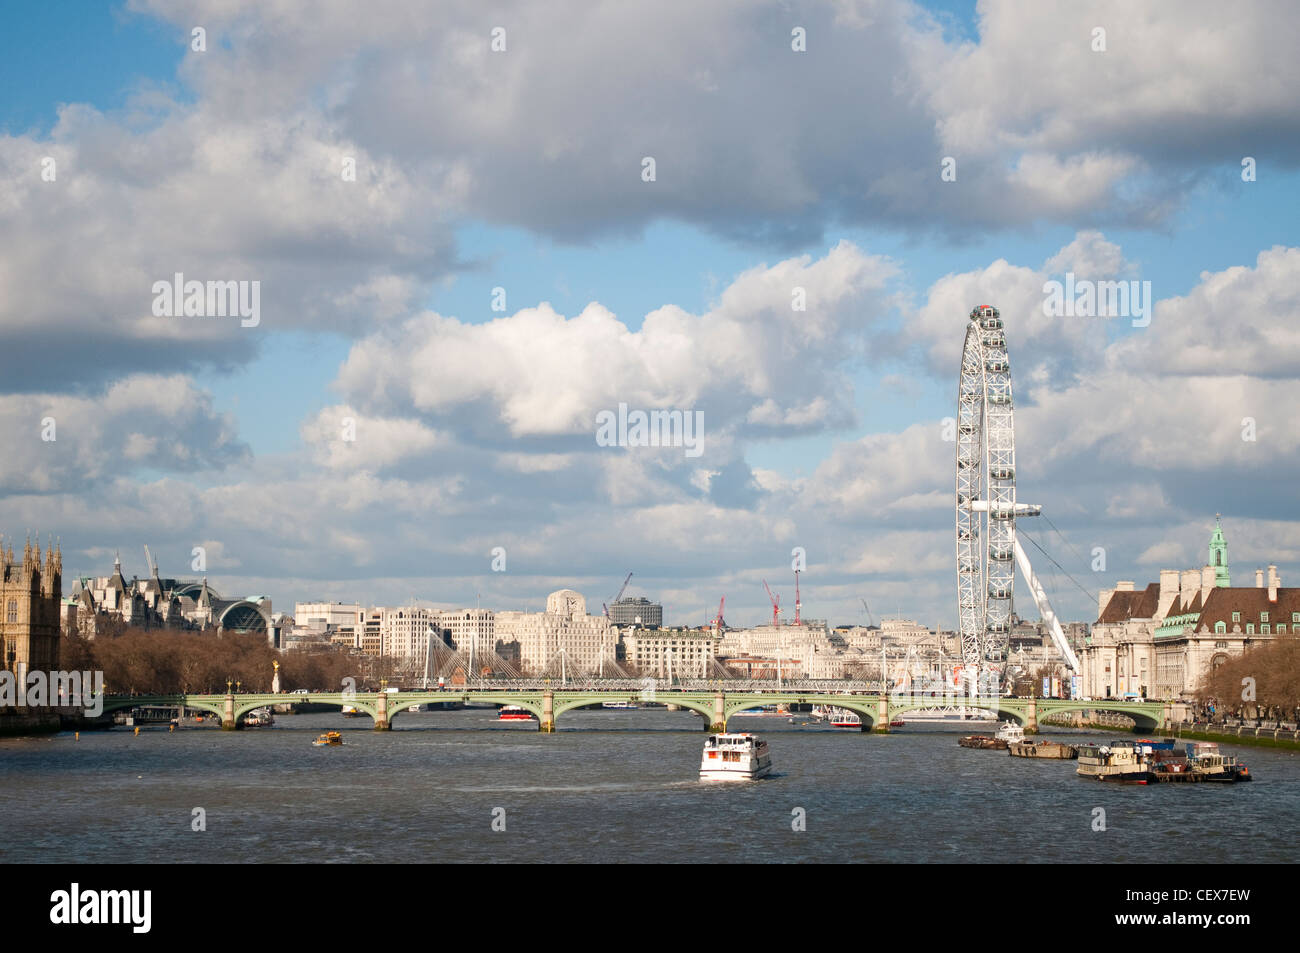 Vista del Támesis con el puente de Westminster y el London eye, London, UK Foto de stock